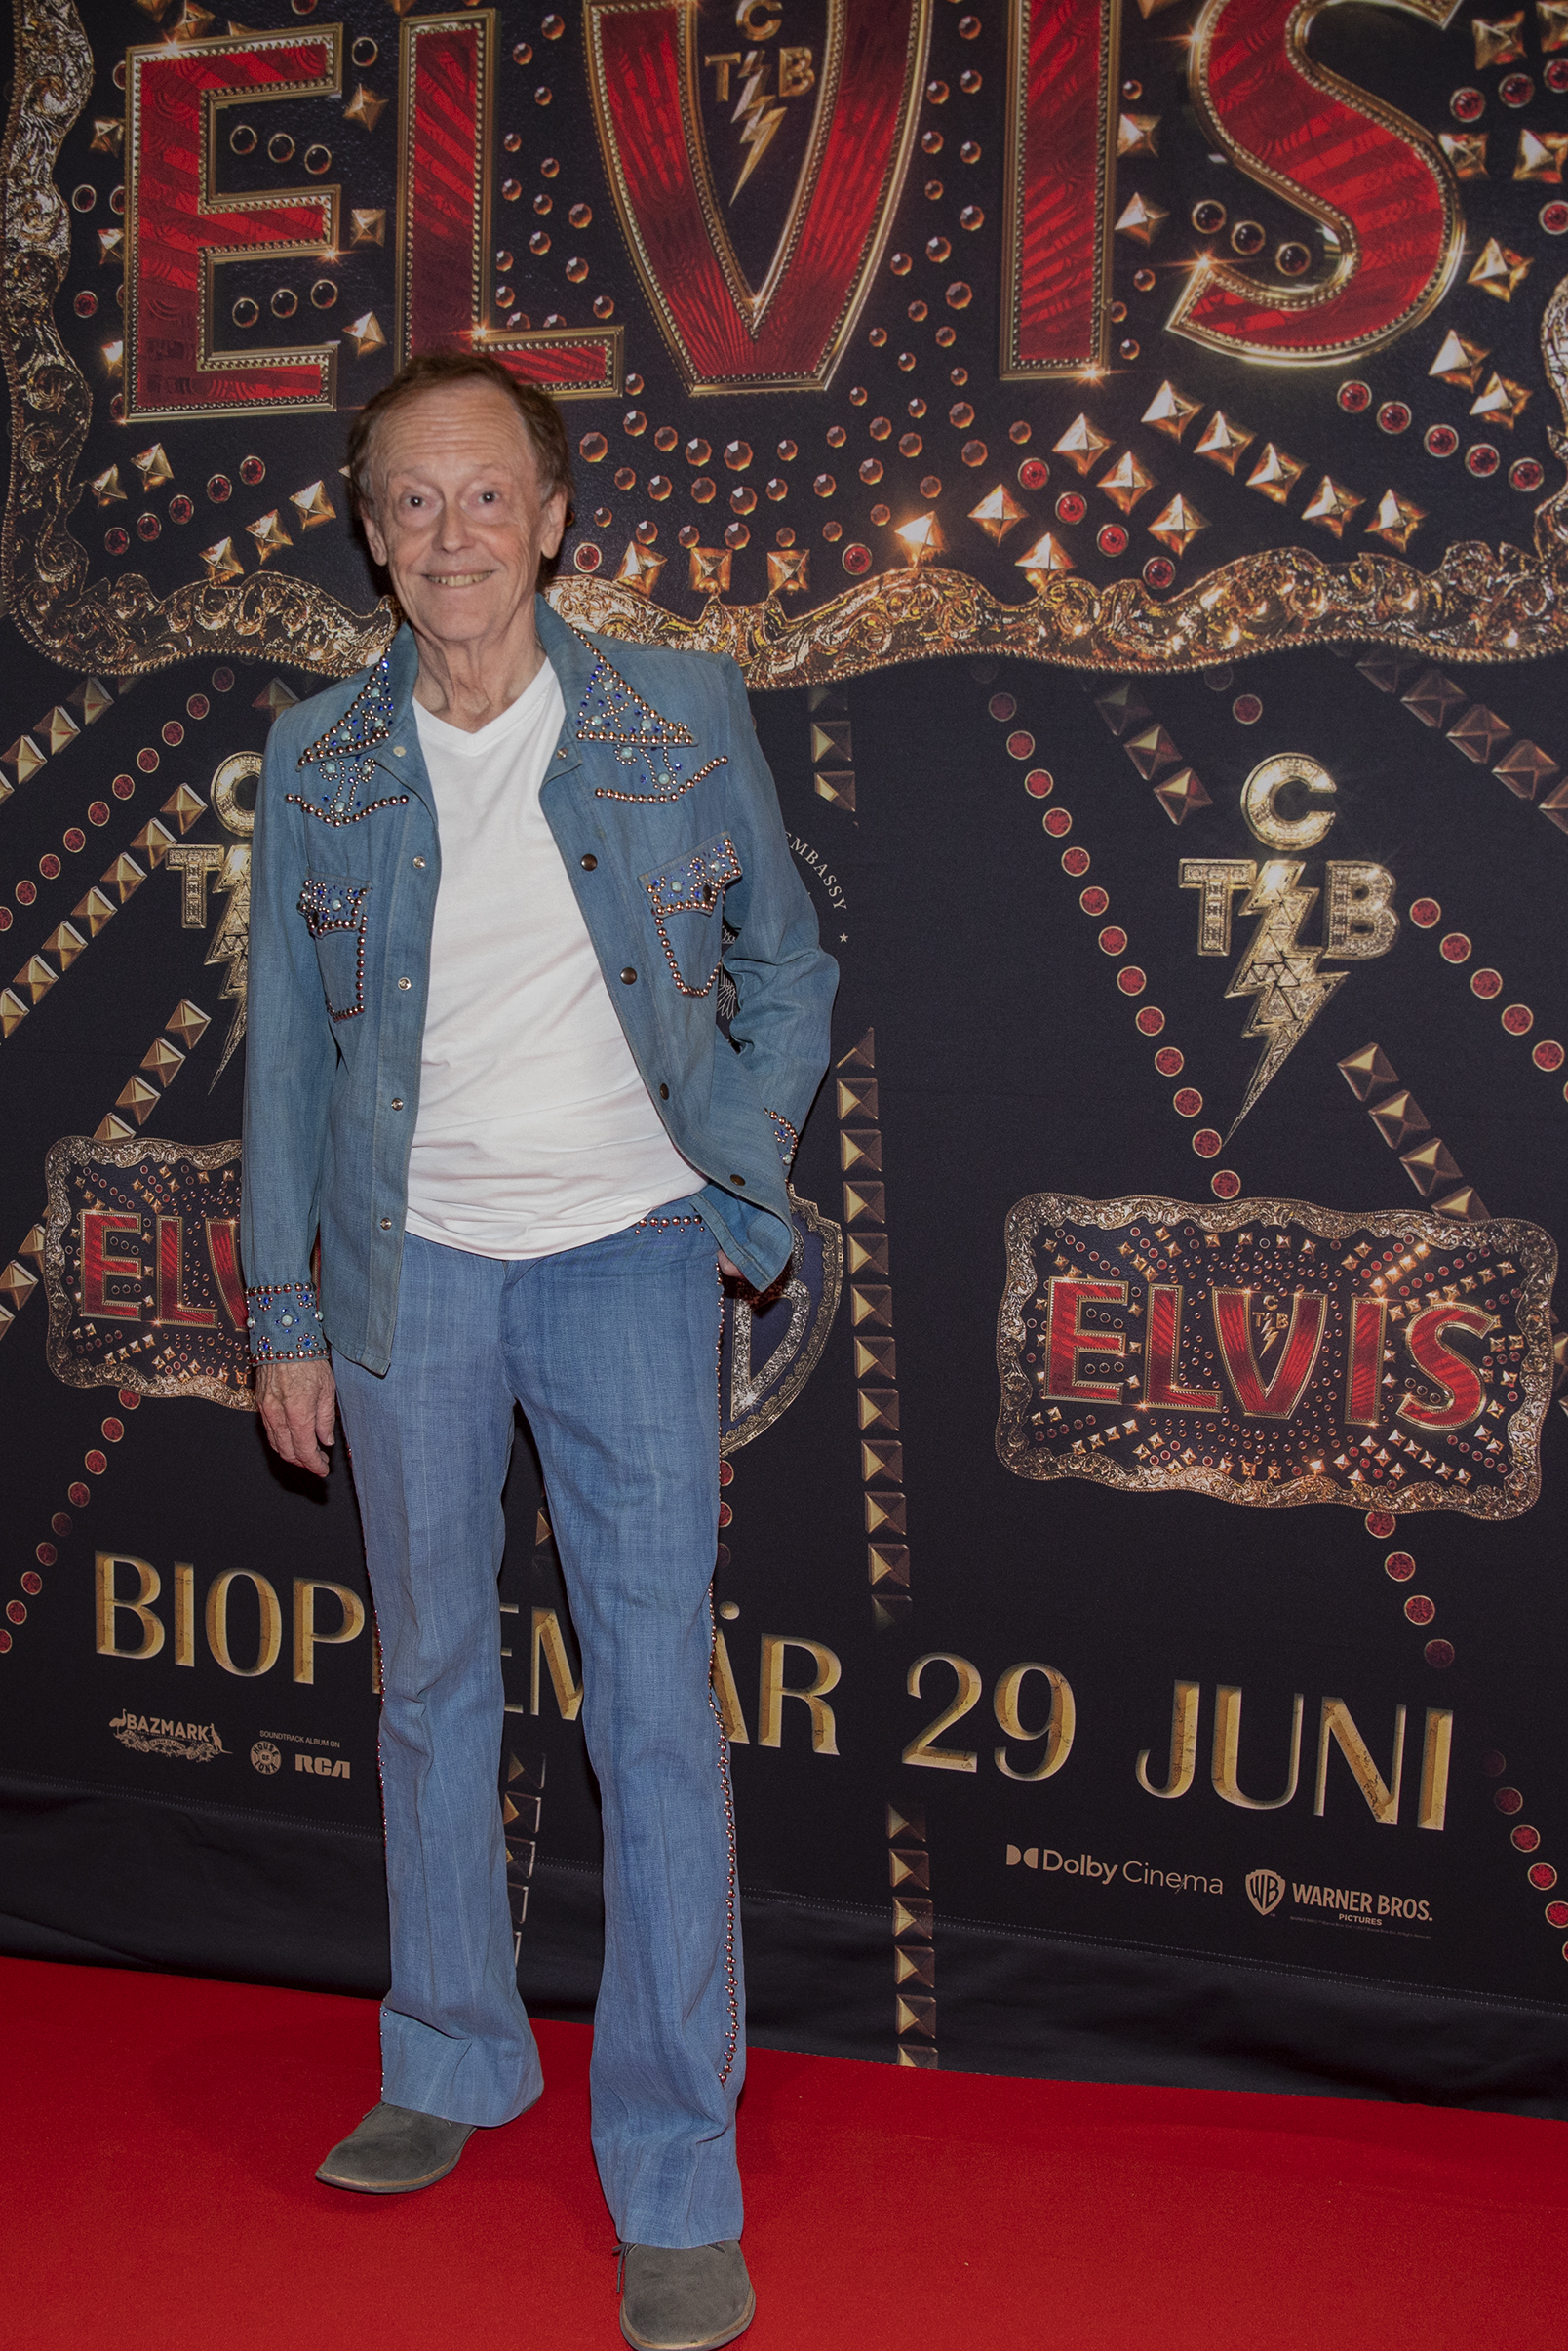 Galapremiär på biograf Rigoletto i Stockholm med filmen Elvis. Fotograf Camilla Käller